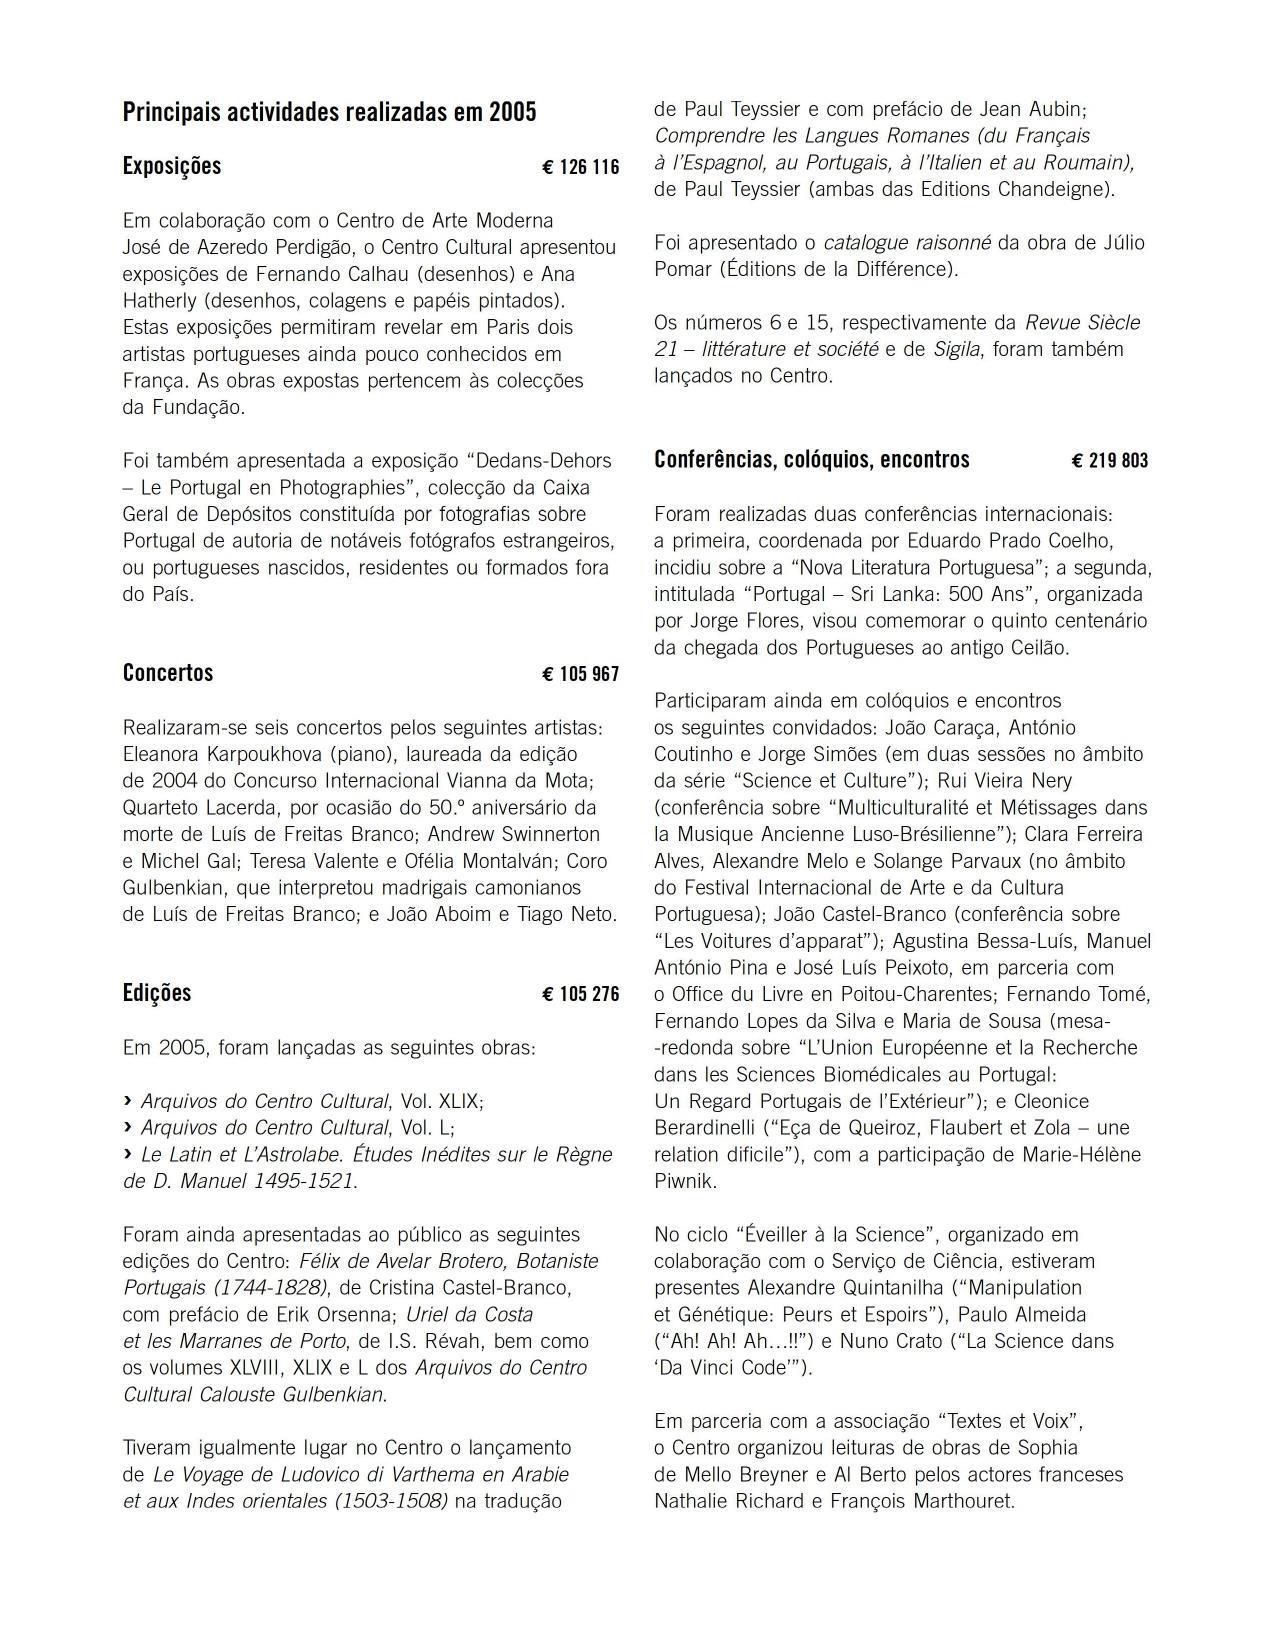 Relatório_Balanço_e_Contas_2005_p.122